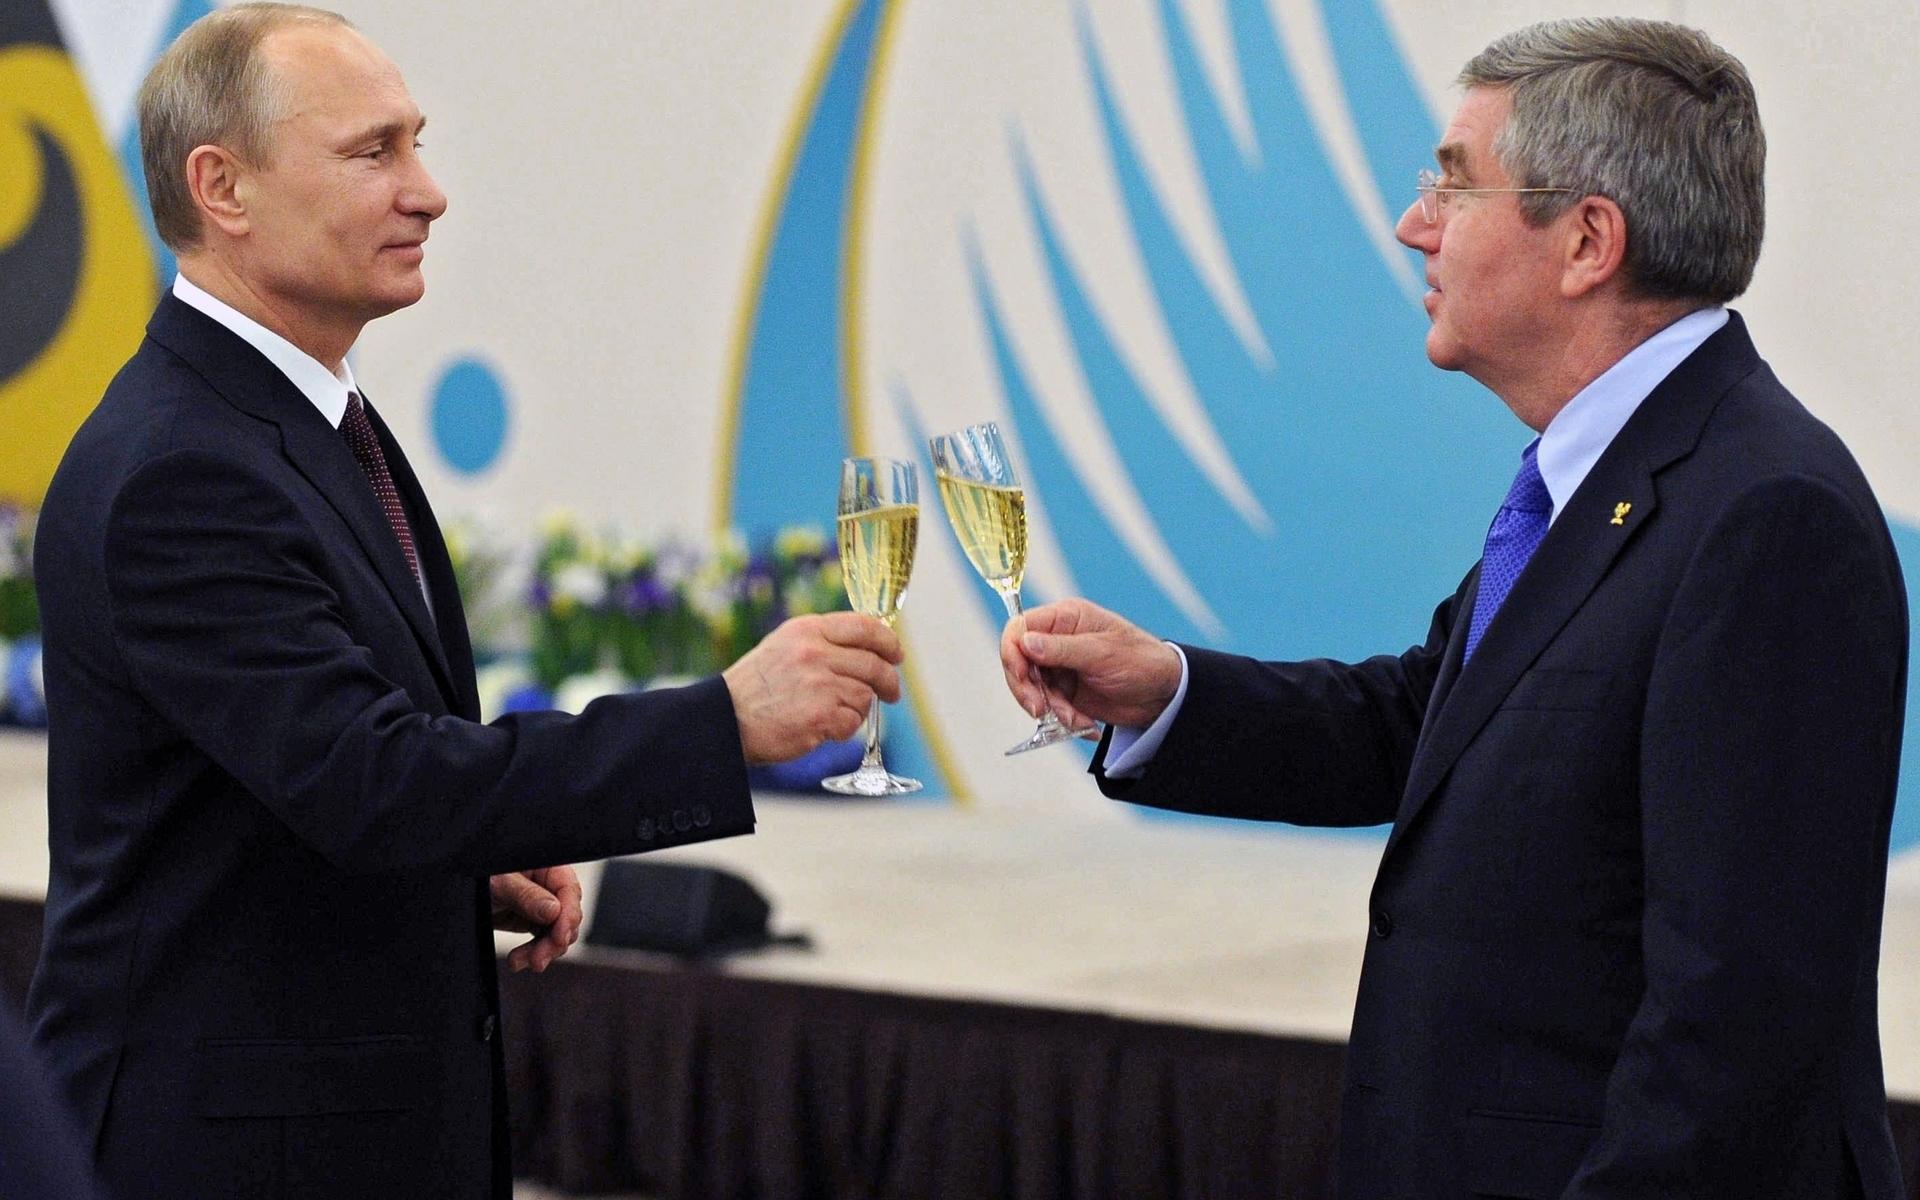 Putin tog emot IOK:s president Thomas Bach  med ett glas champagne i samband med OS 2014.